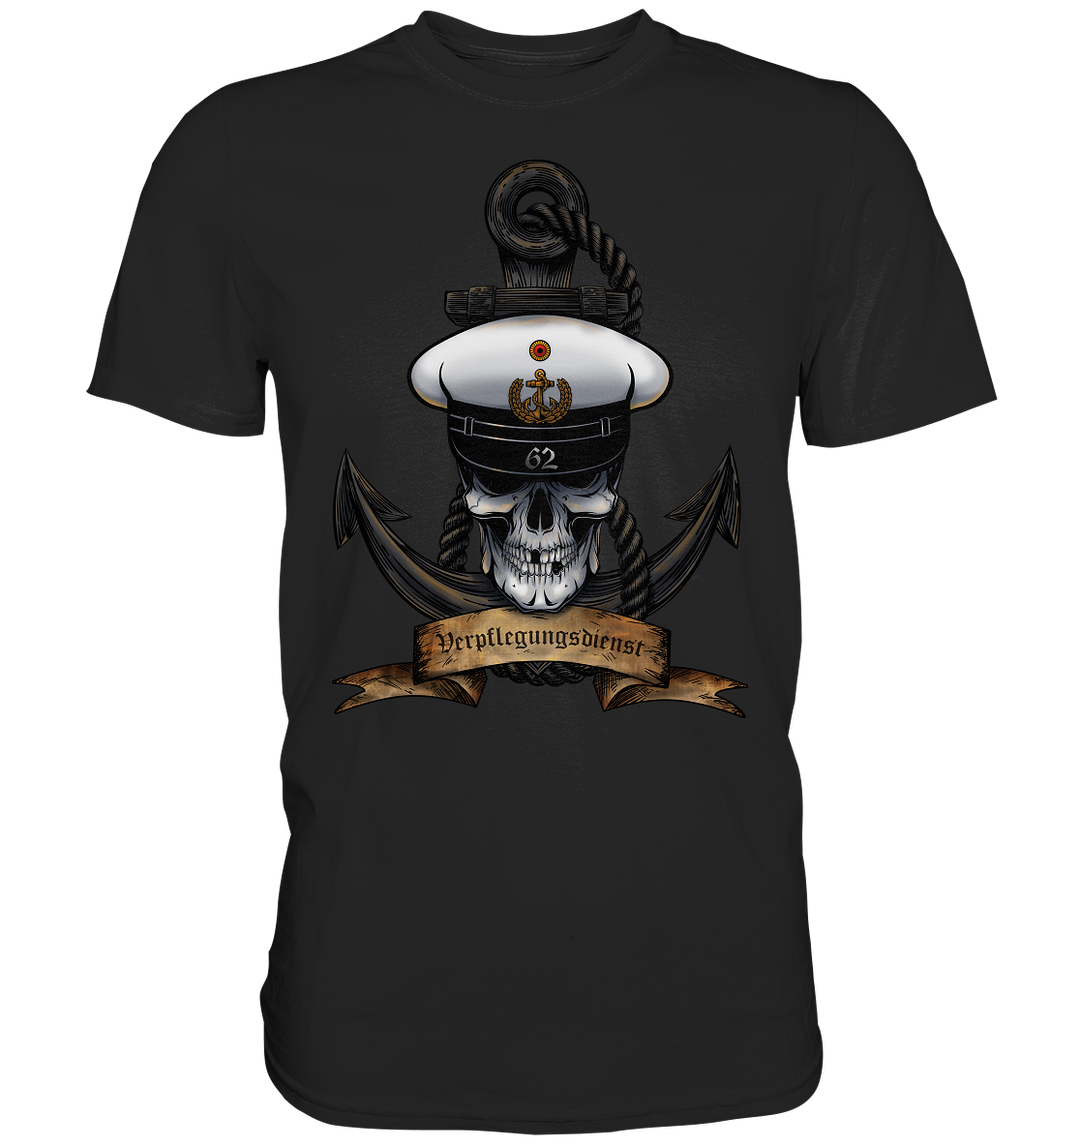 "Marine 62 - Verpflegungsdienst" - Premium Shirt